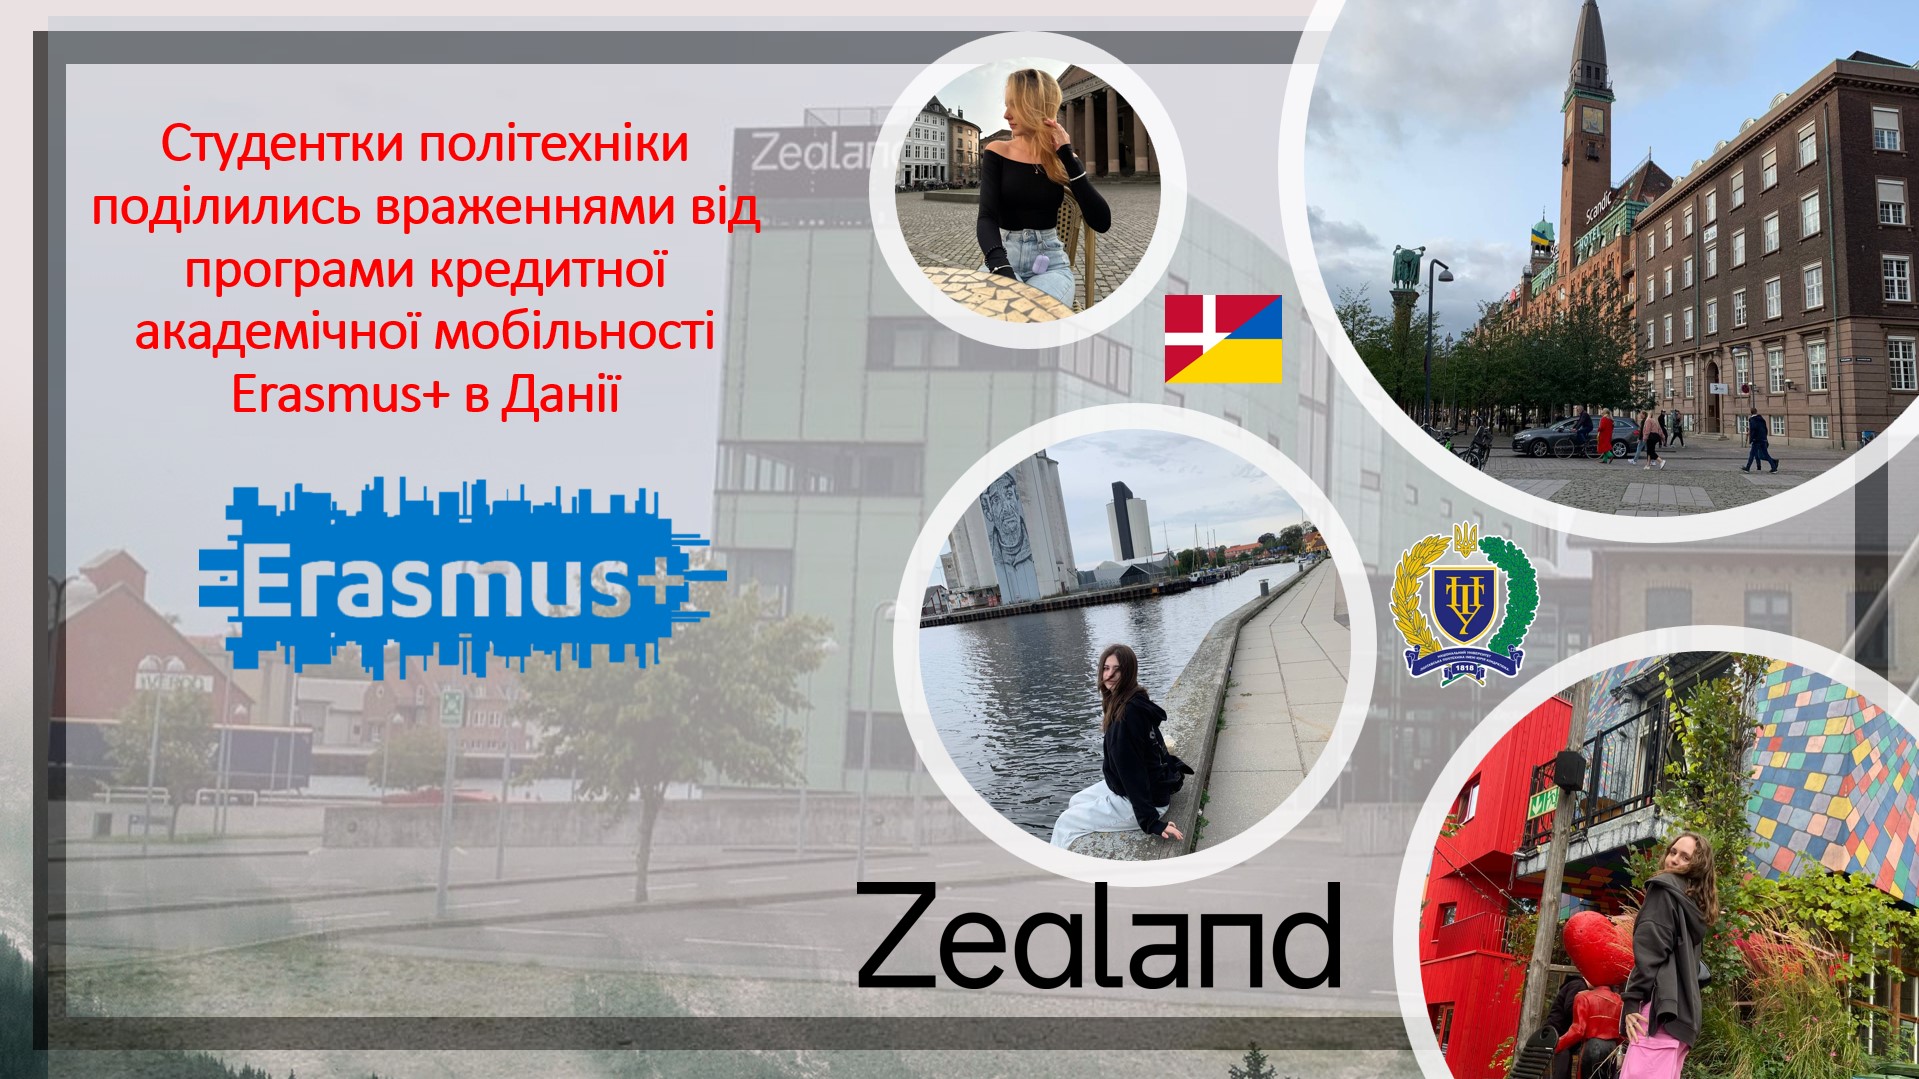 Студентки політехніки поділилися враженнями від програми кредитної академічної мобільності Erasmus+ в Данії